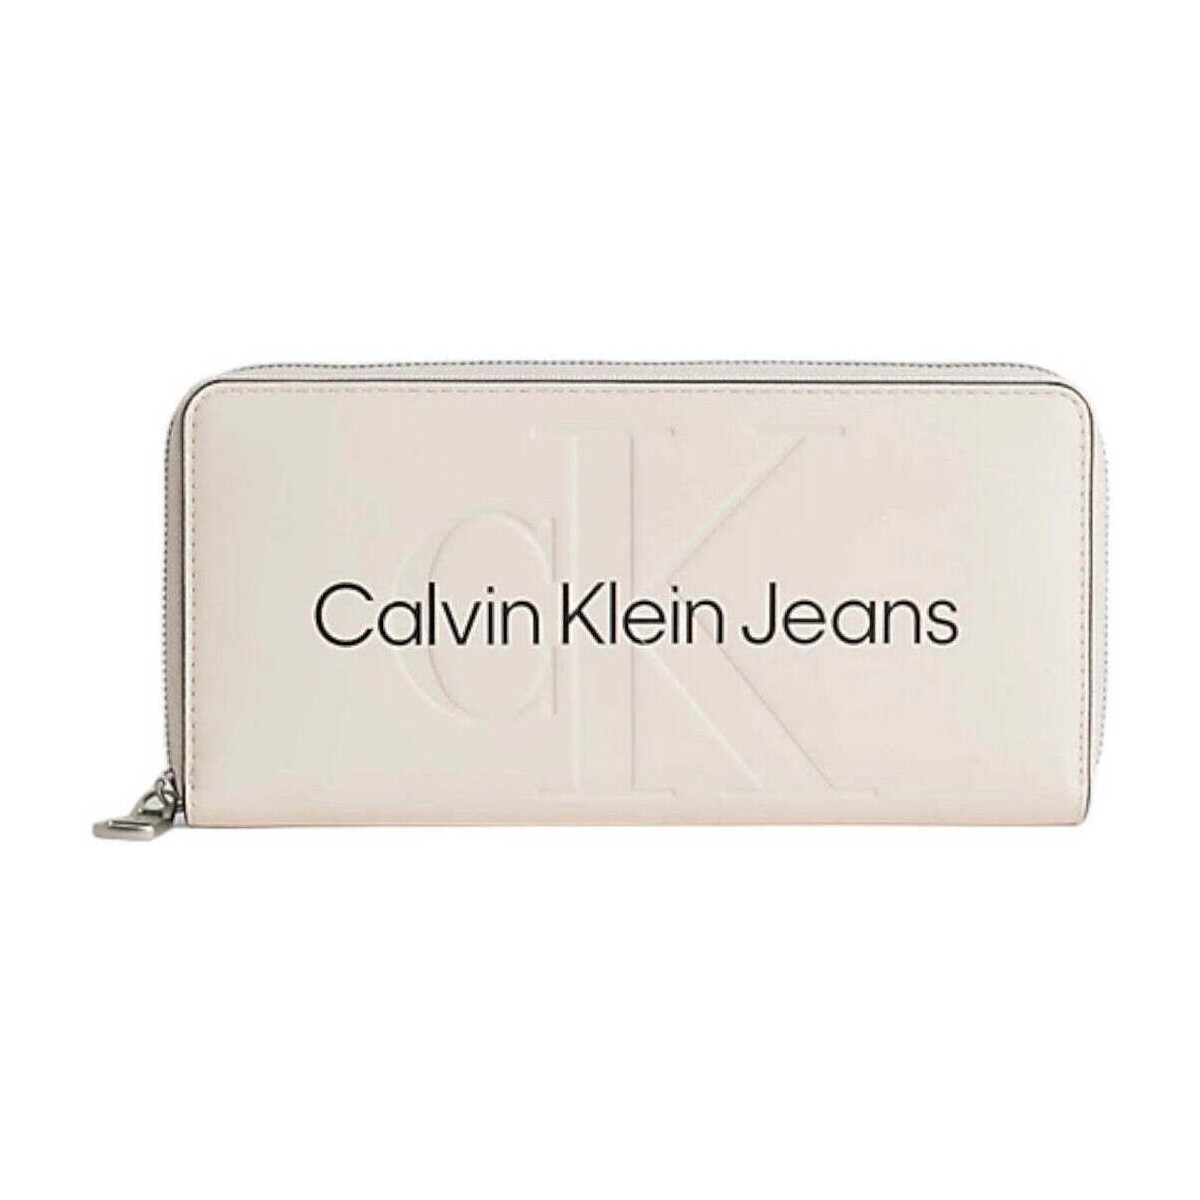 Bolsos Mujer Cartera Calvin Klein Jeans  Rosa